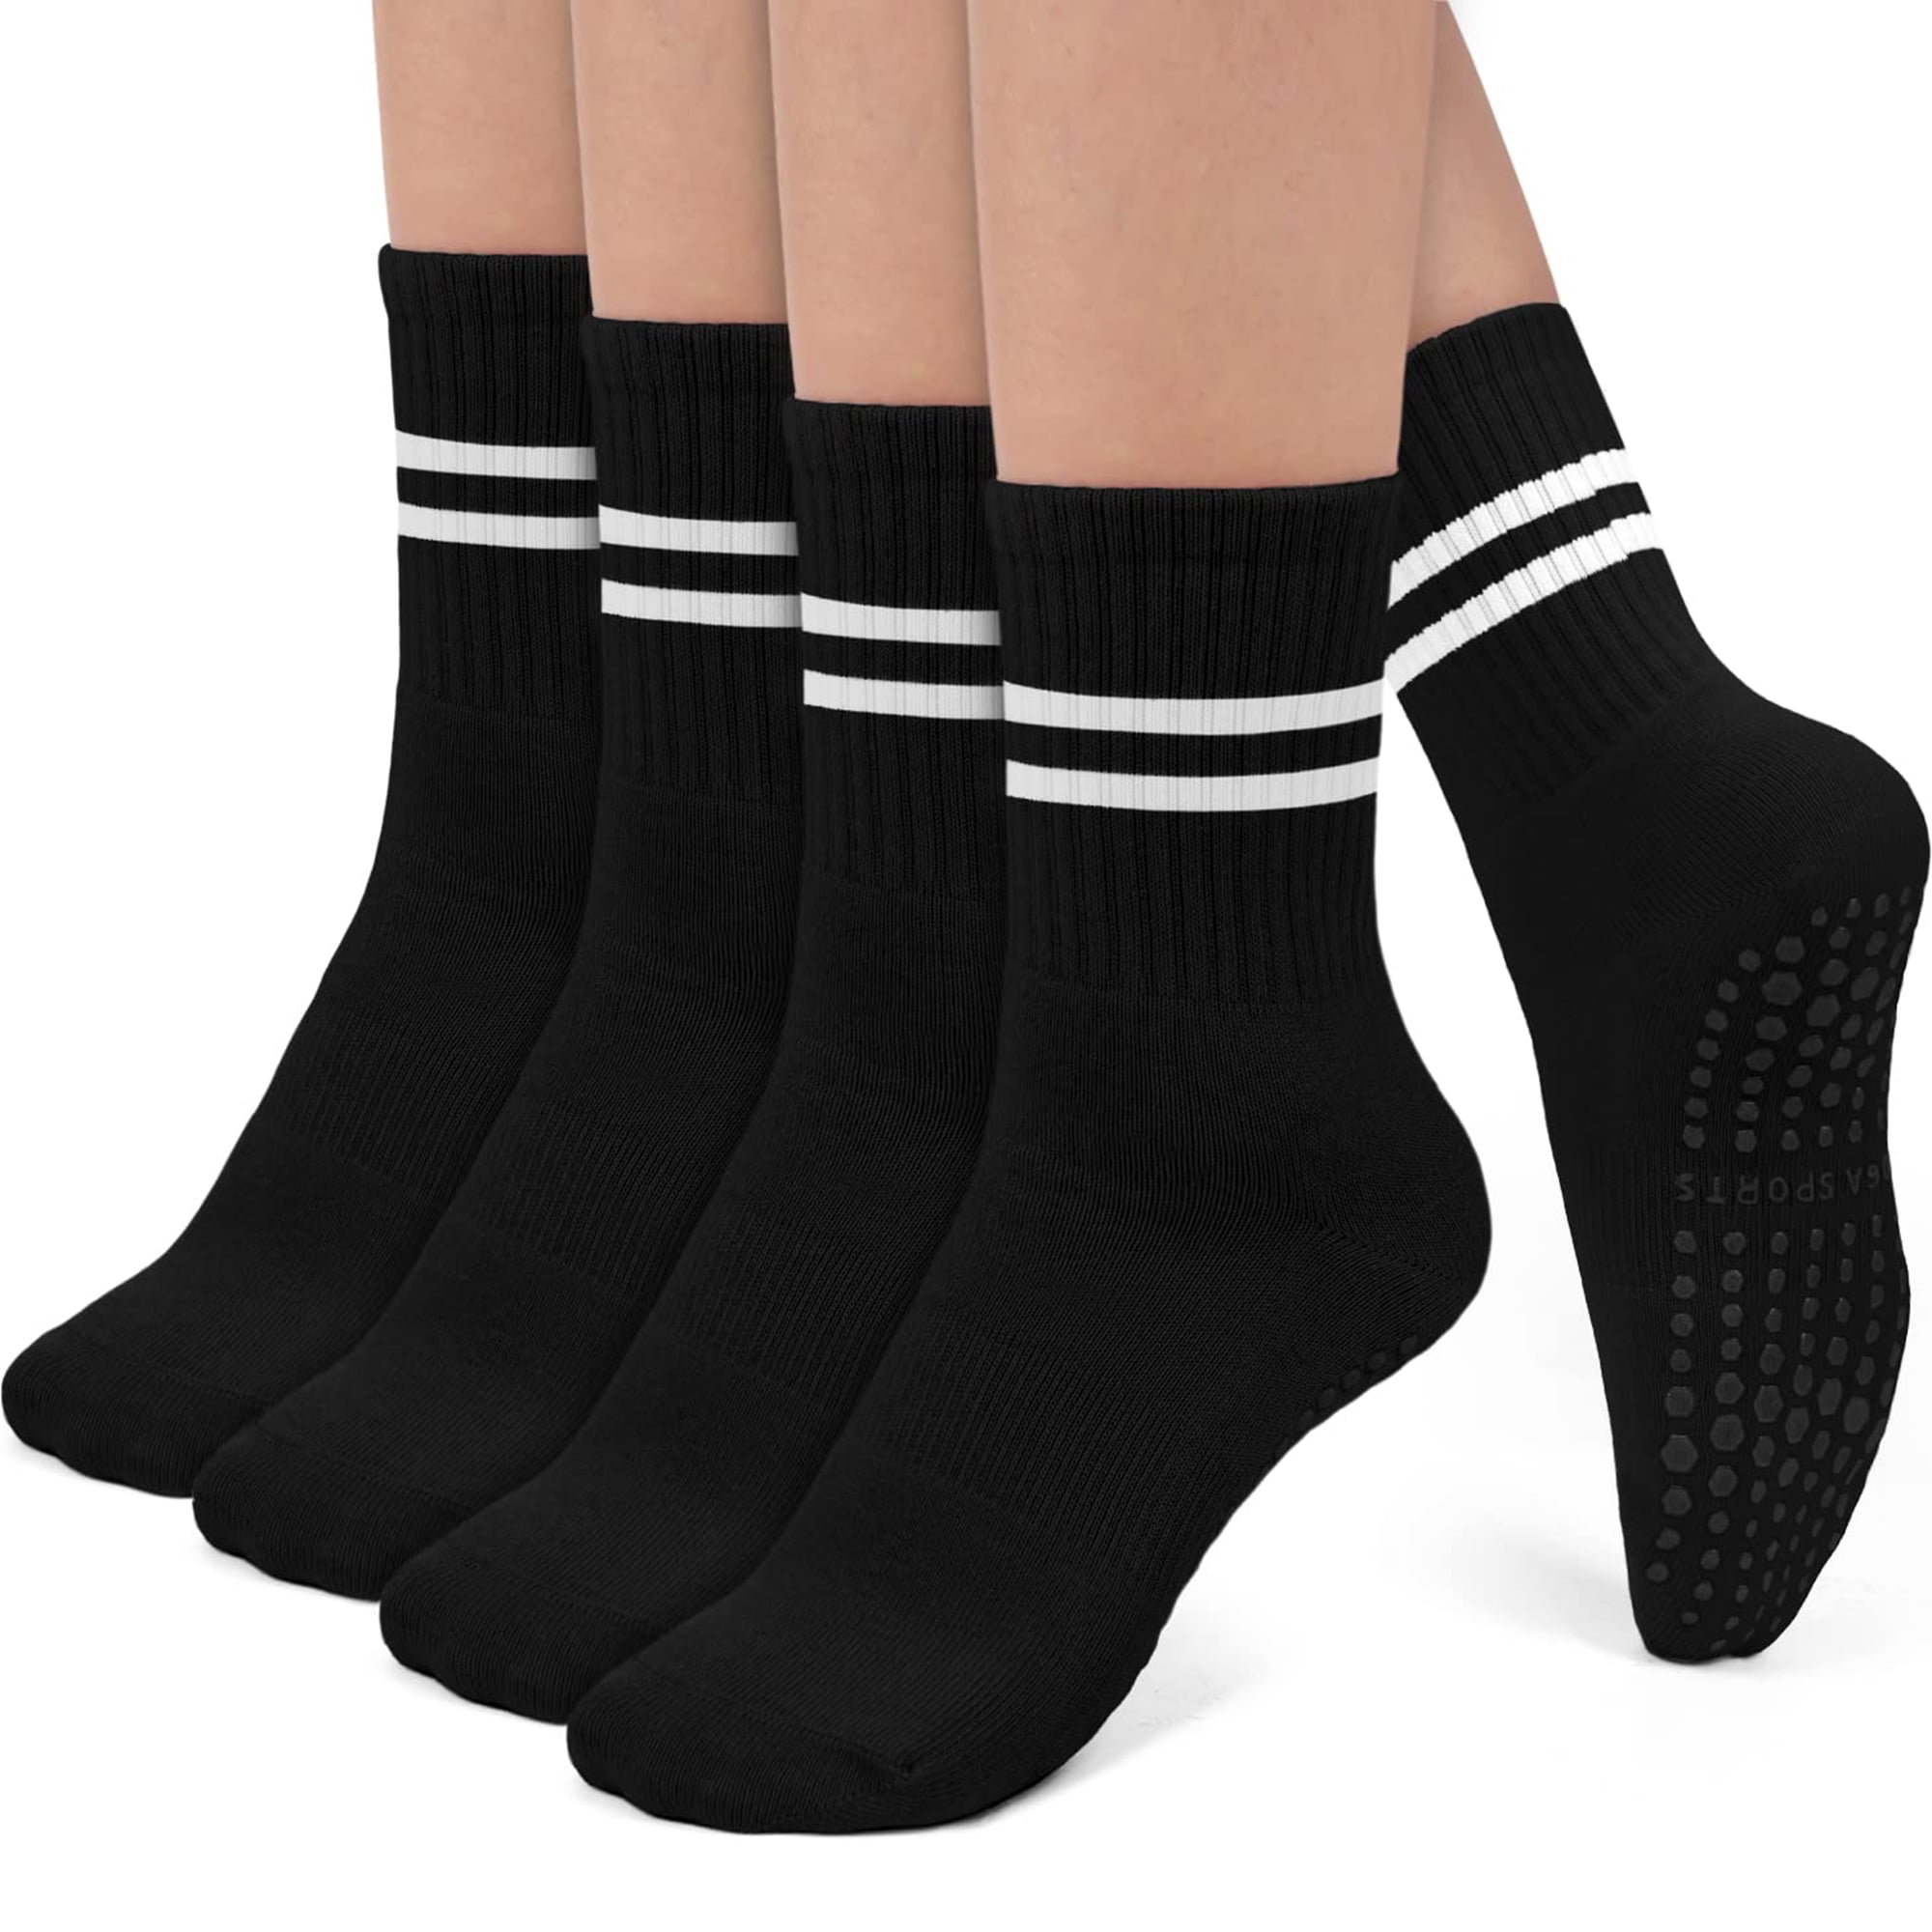 Yoga Socks Non Slip Socks, Cotton Pilates Socks with Grips for Women, Non  Skid Grippy Hospital Socks for Yoga Pilates Barre Dance Women Men, 4 Pairs  Black 